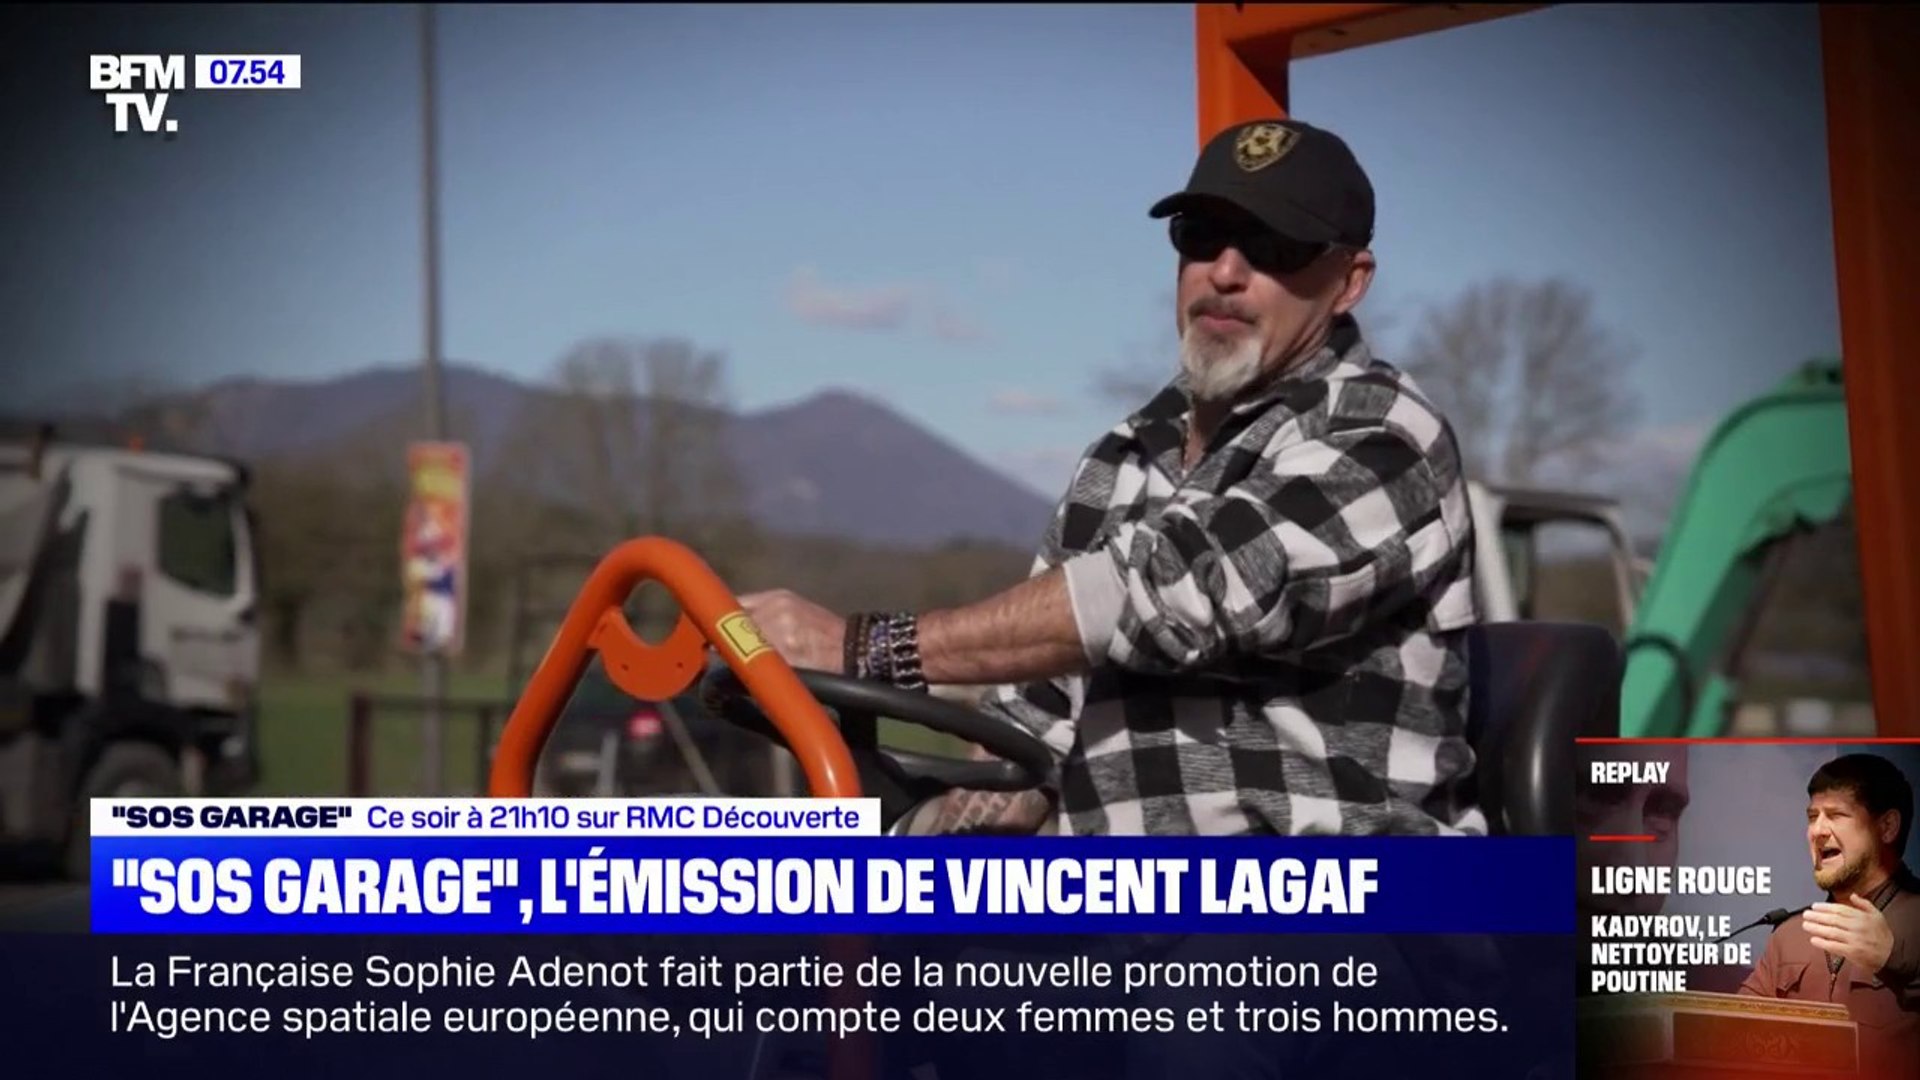 SOS garage", la nouvelle émission de Vincent Lagaf qui vient en aide aux  garagistes - Vidéo Dailymotion